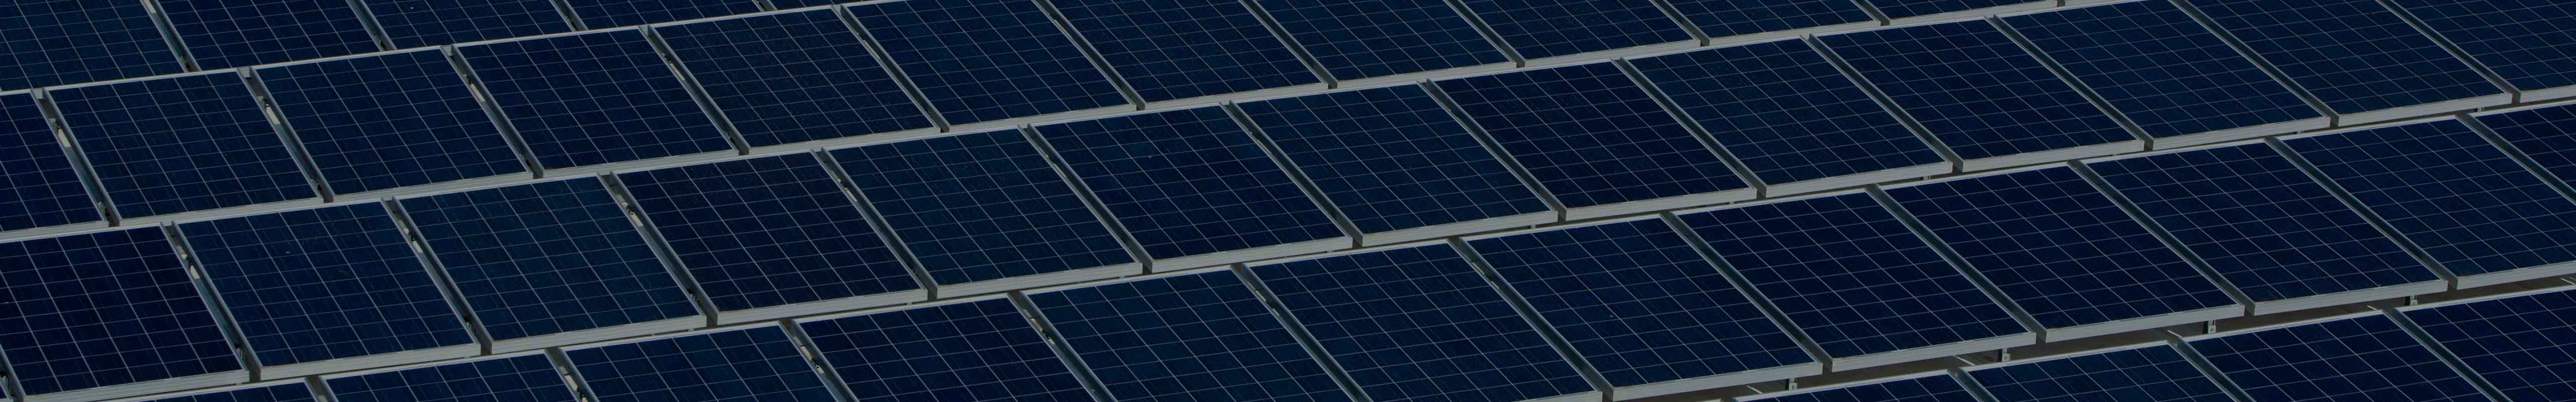 SEAT S.A. instalará 39,000 nuevos paneles solares para triplicar su capacidad de autogenerar energía renovable